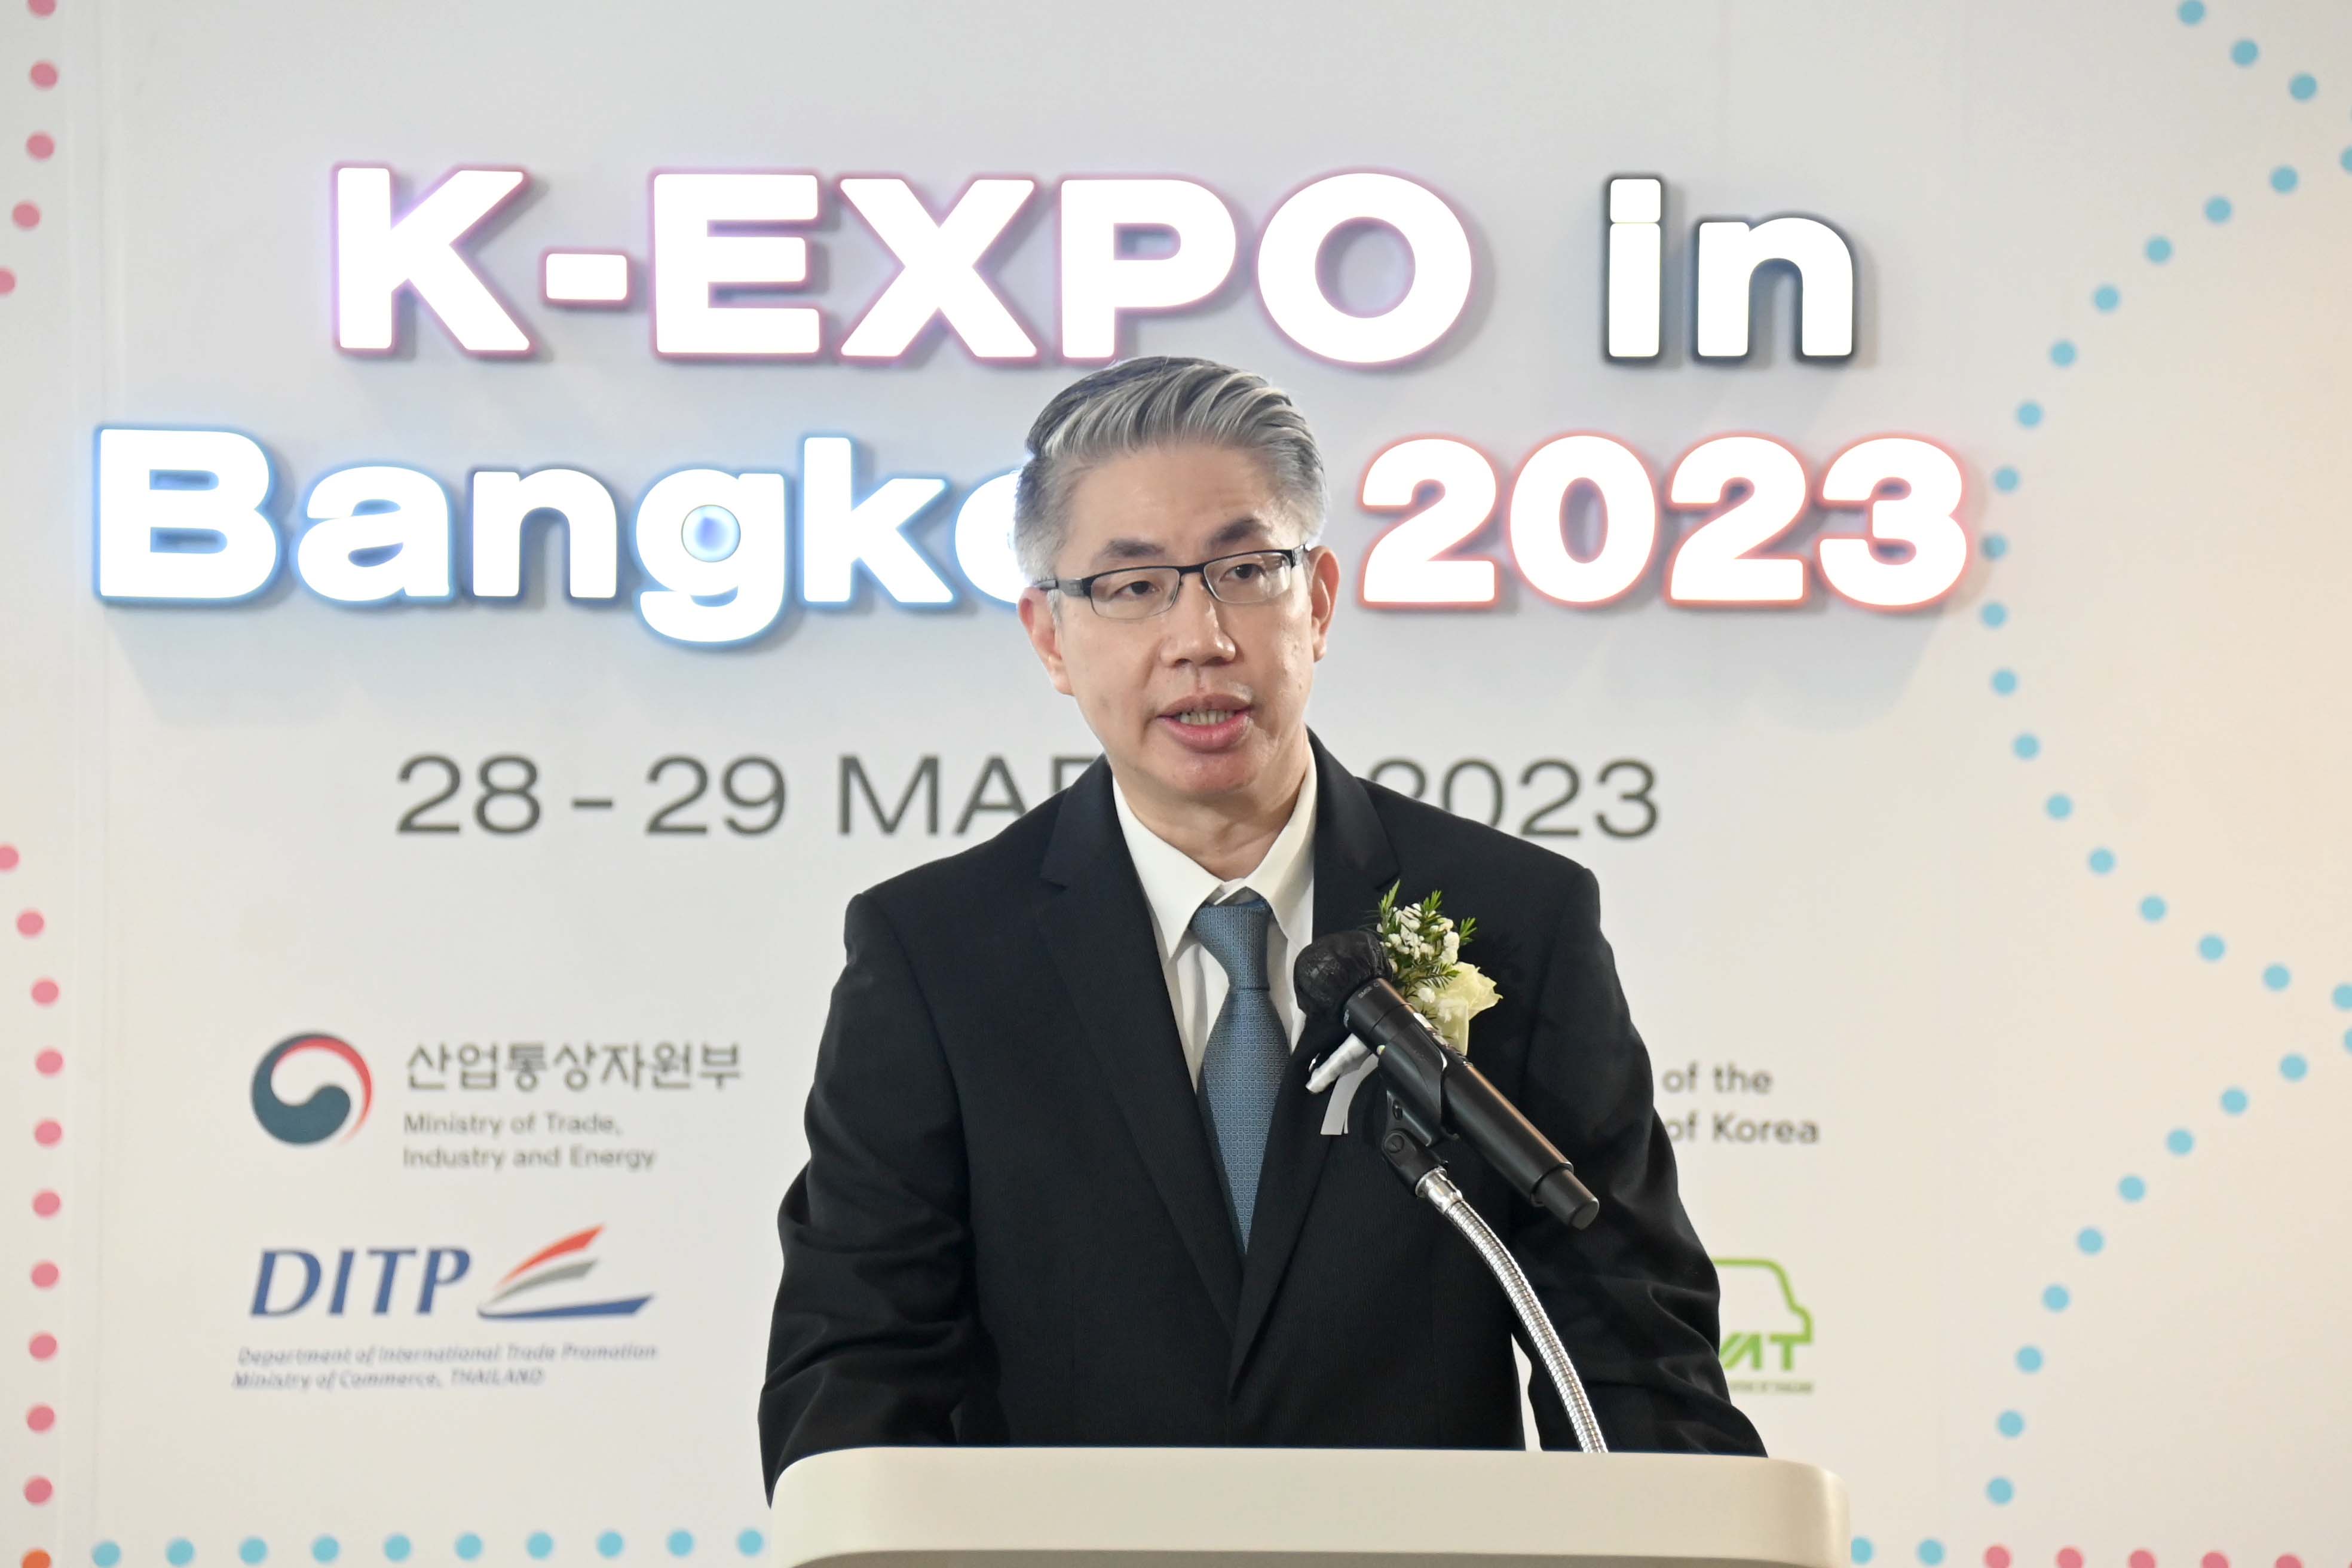 กระทรวงอุตฯ จับมือ เกาหลีใต้ เปิดเวทีเจรจาธุรกิจระดับนานาชาติ ในงาน Korea Expo in Bangkok 2023